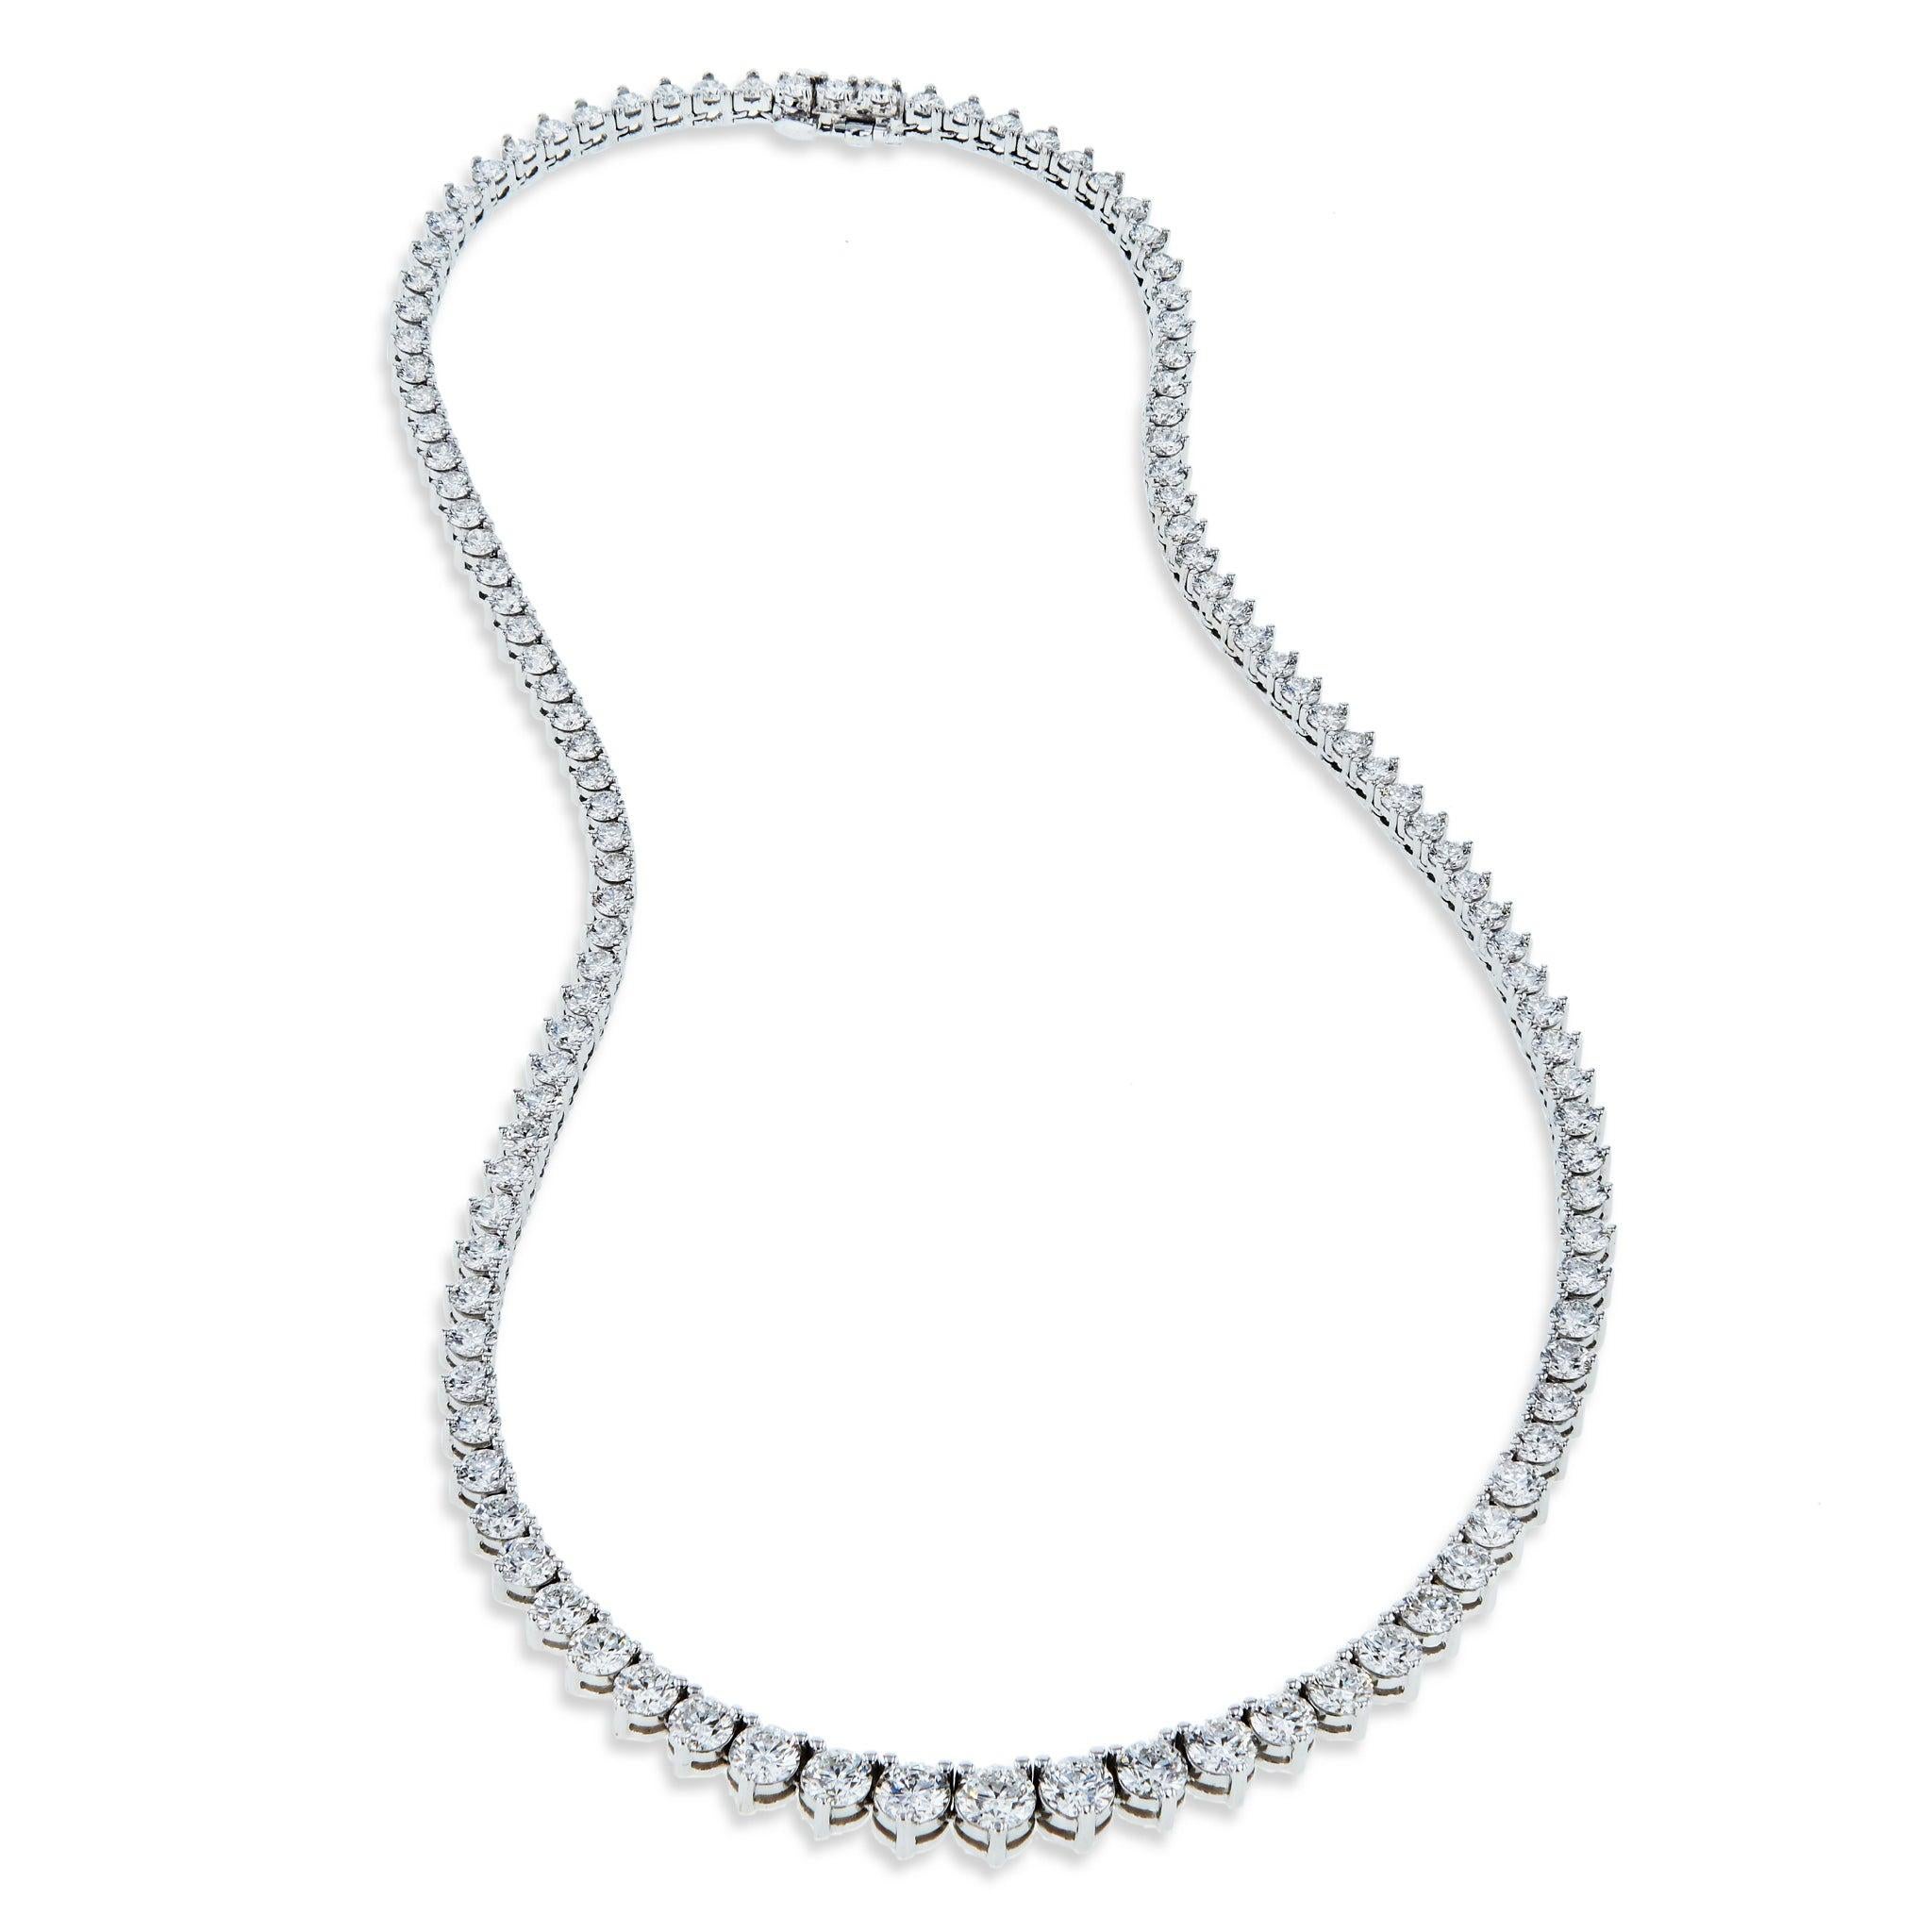 Diese wunderschöne Riviera-Halskette besteht aus 15,44 Karat schillernden Diamanten im Brillantschliff mit der Farbe F/G und der Reinheit VS1/SI1 (EX, VG-Schliff). 

Diese atemberaubende Halskette nimmt zur Mitte hin, wo sich die größten Steine